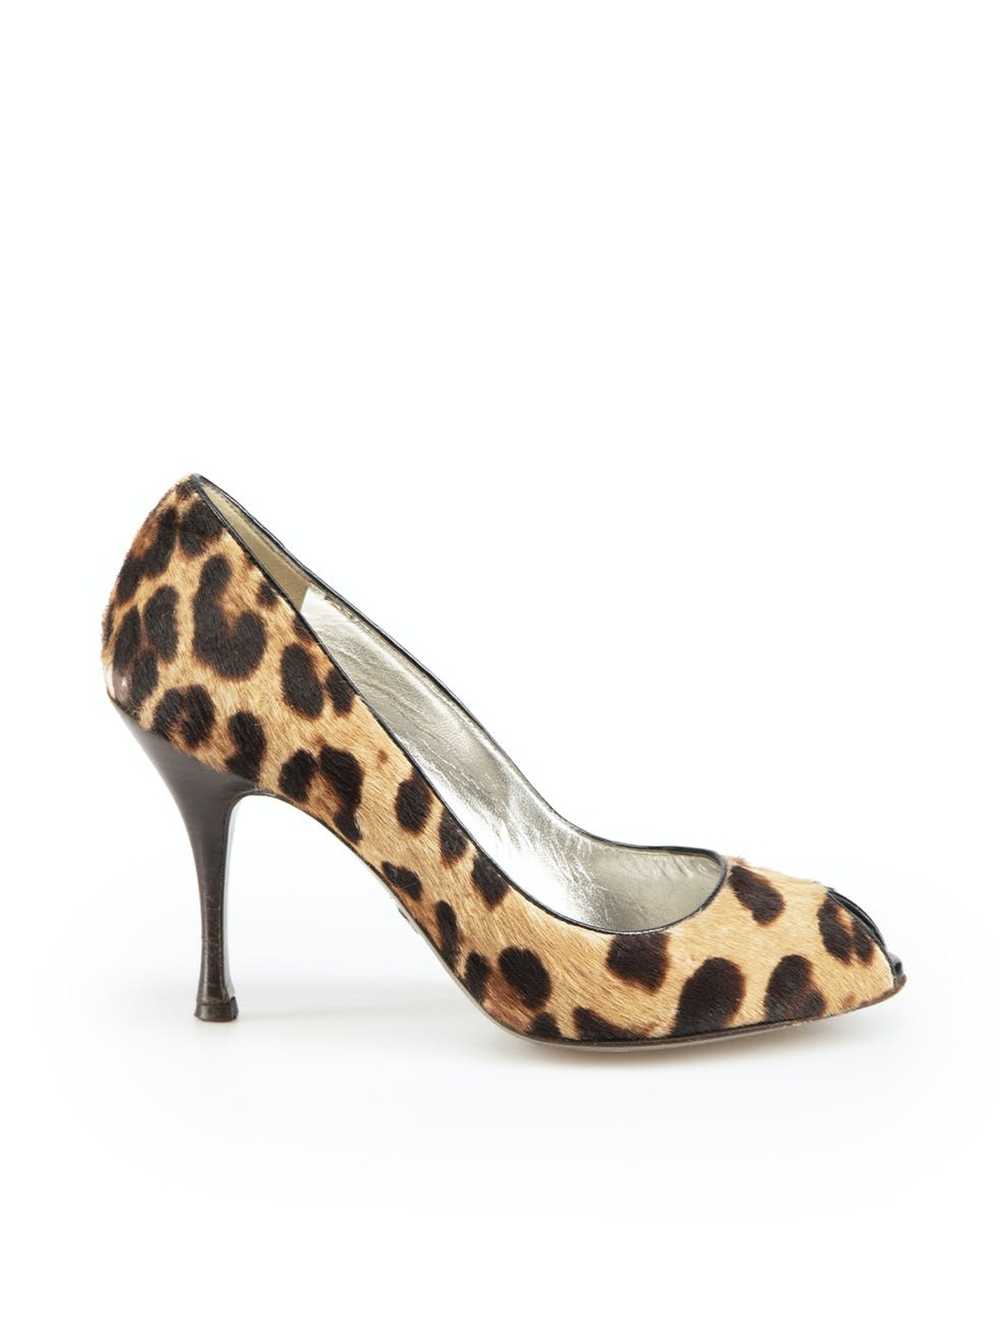 Dolce & Gabbana Brown Ponyhair Leopard Heels - image 1